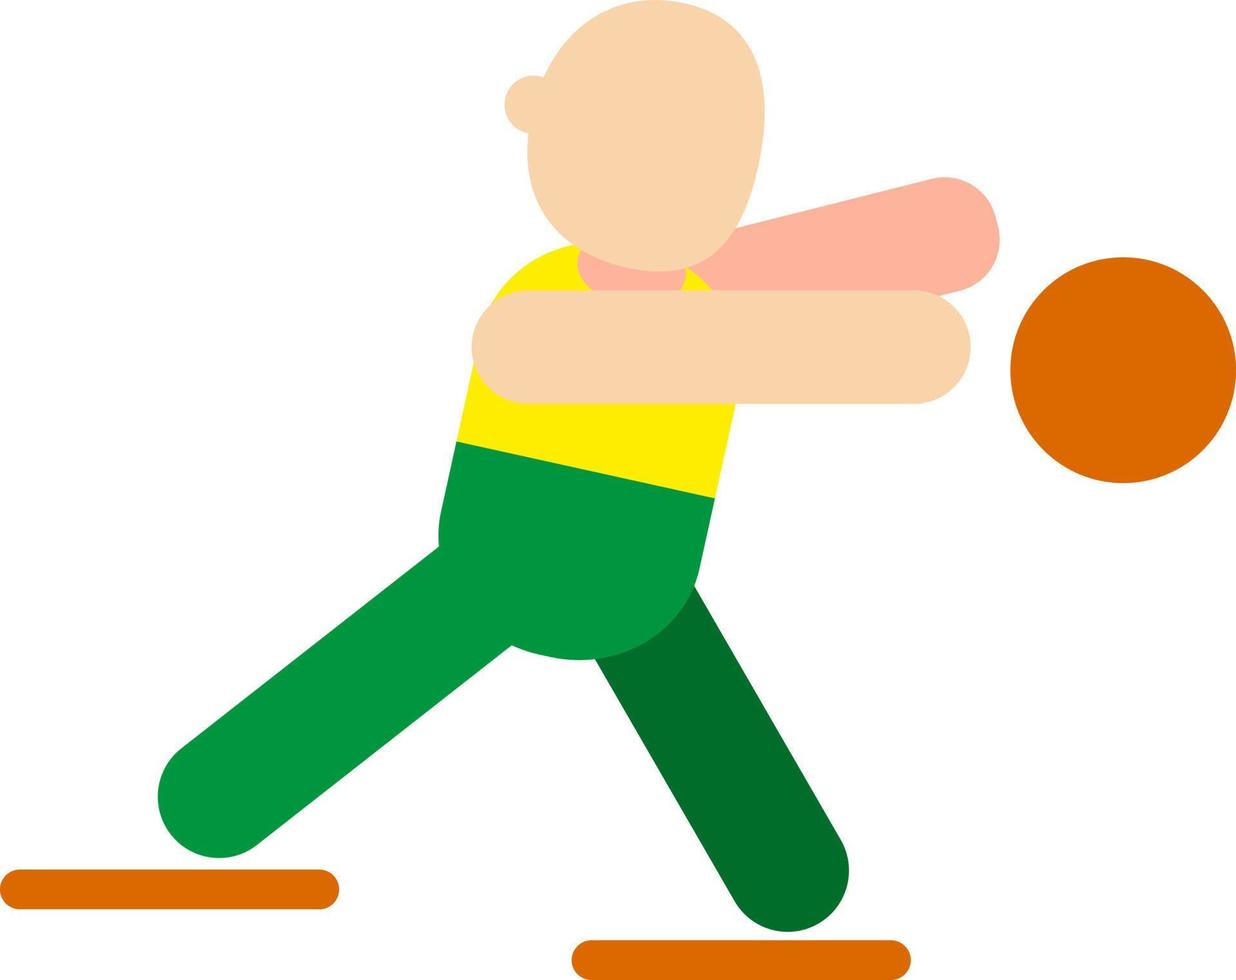 körperliche Aktivität mit Ball, Illustration, Vektor auf weißem Hintergrund.